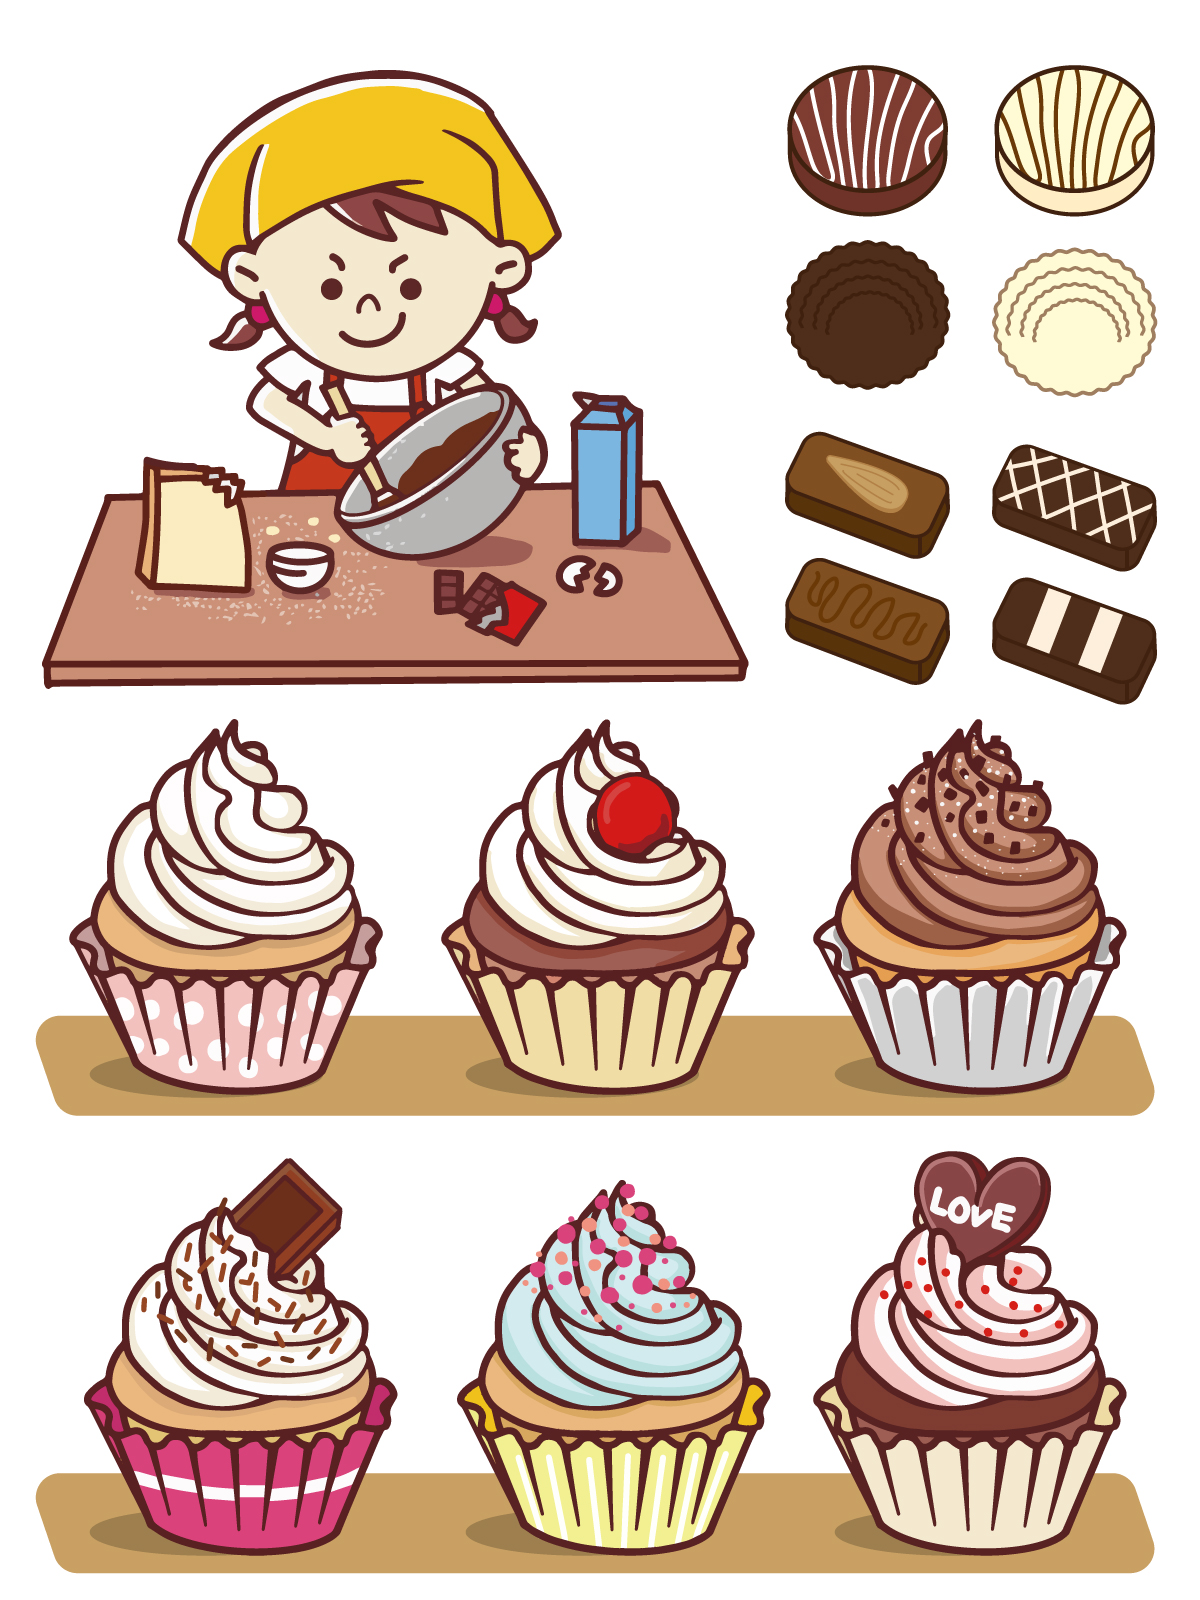 Yuji N Design Sur Twitter バレンタインデーにむけて お菓子づくりをテーマに描いてみた カップケーキ食べたいw T Co Mf37jjirop バレンタイン お菓子作り カップケーキ イラスト好きさんと繋がりたい イラストac Ipadpro プロクリエイト T